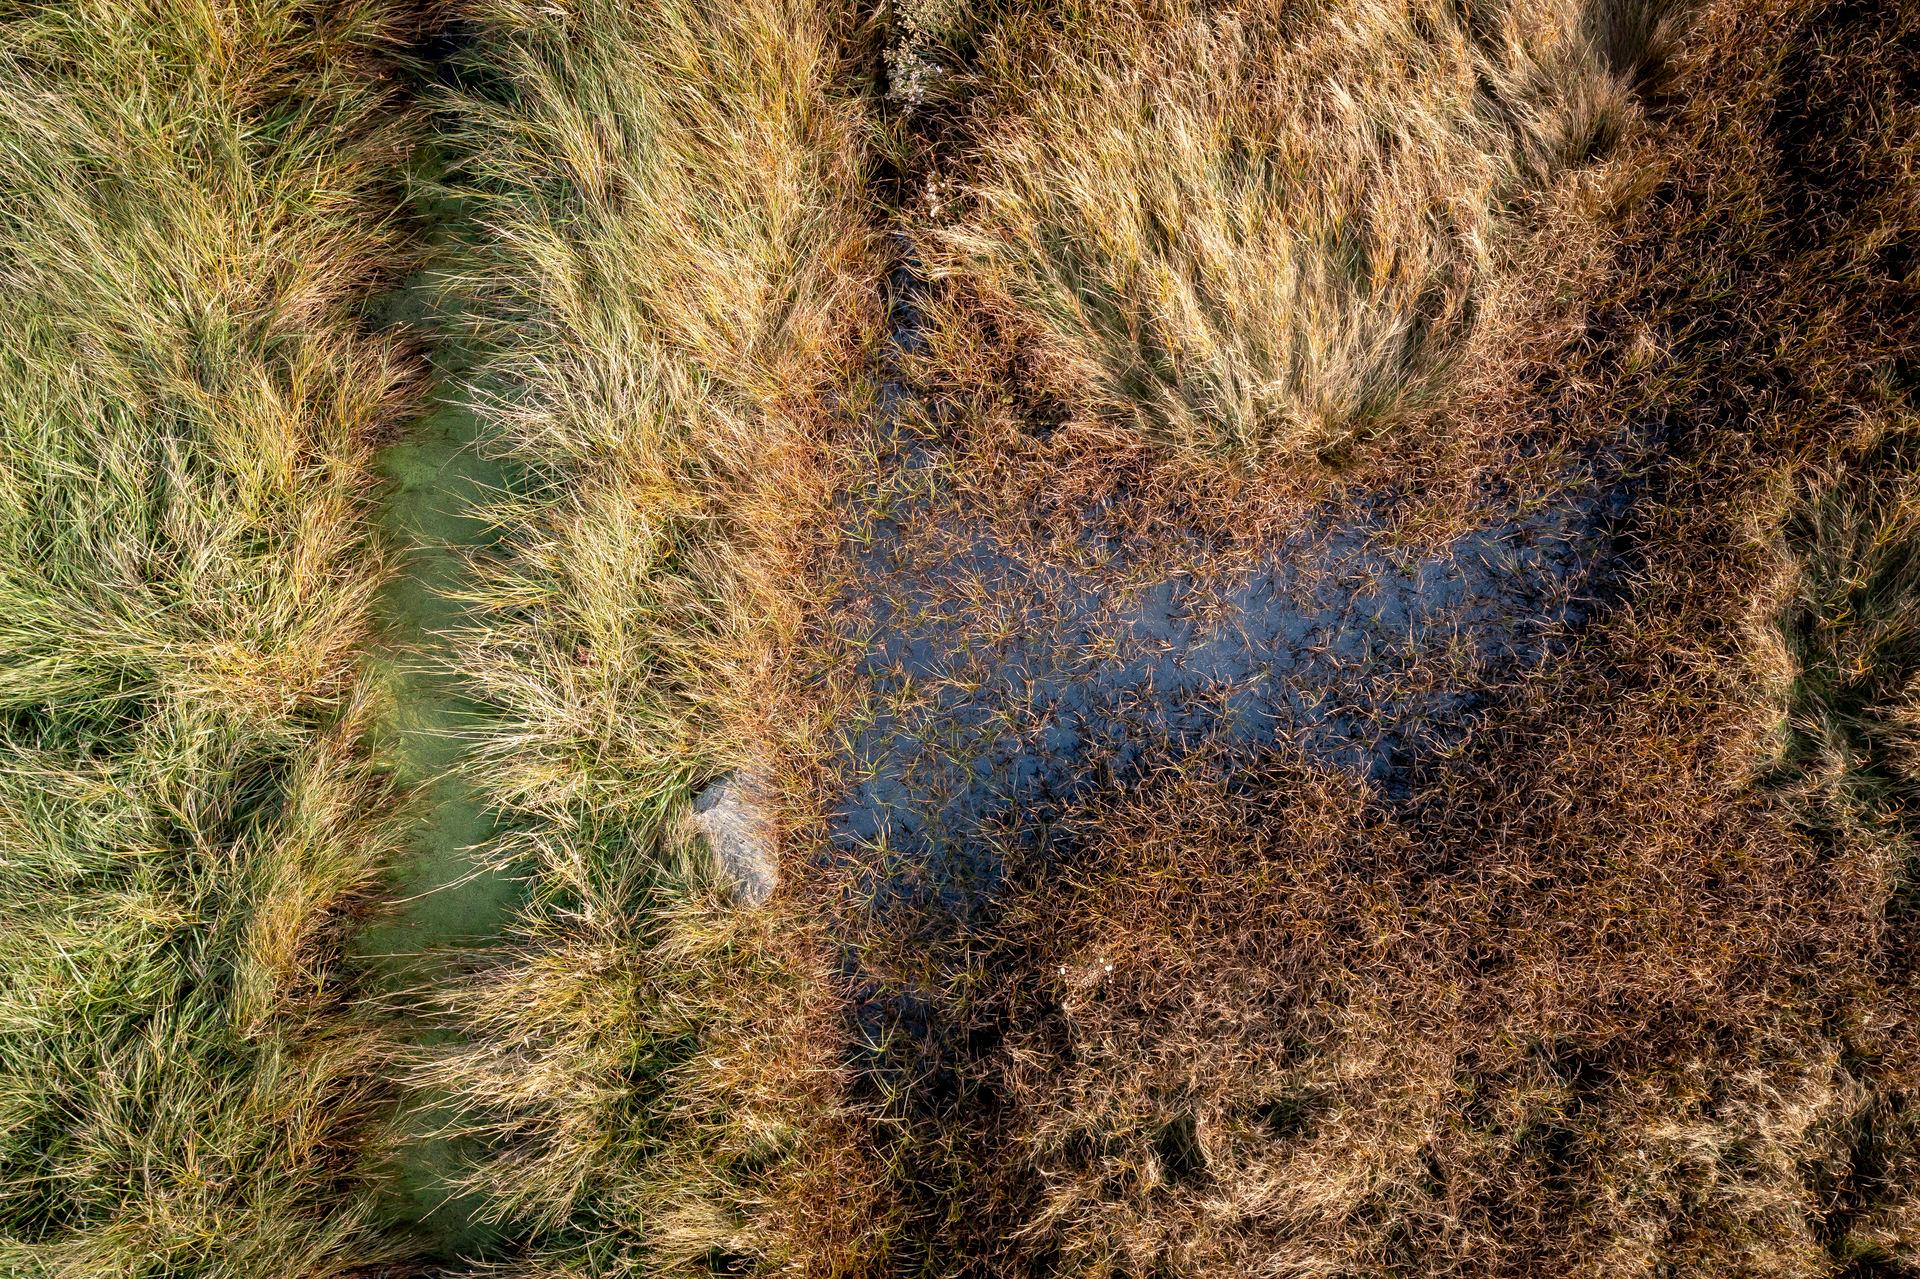  Et forurenet vandløb, fotograferet fra drone.